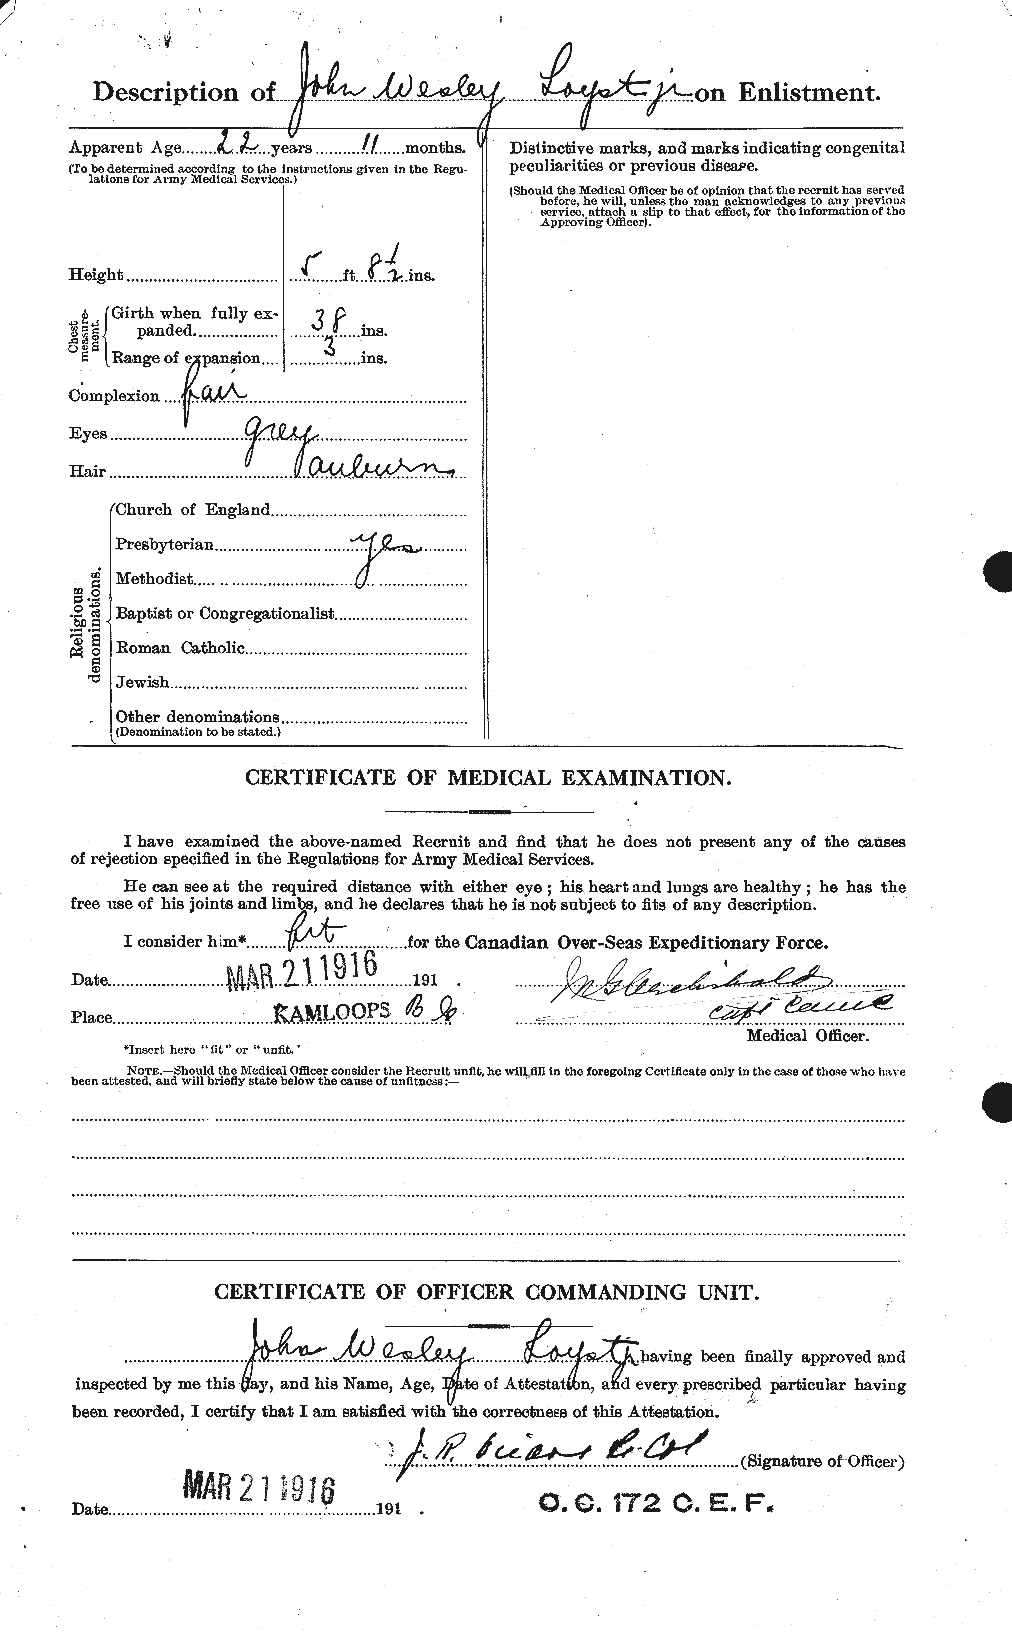 Dossiers du Personnel de la Première Guerre mondiale - CEC 475313b